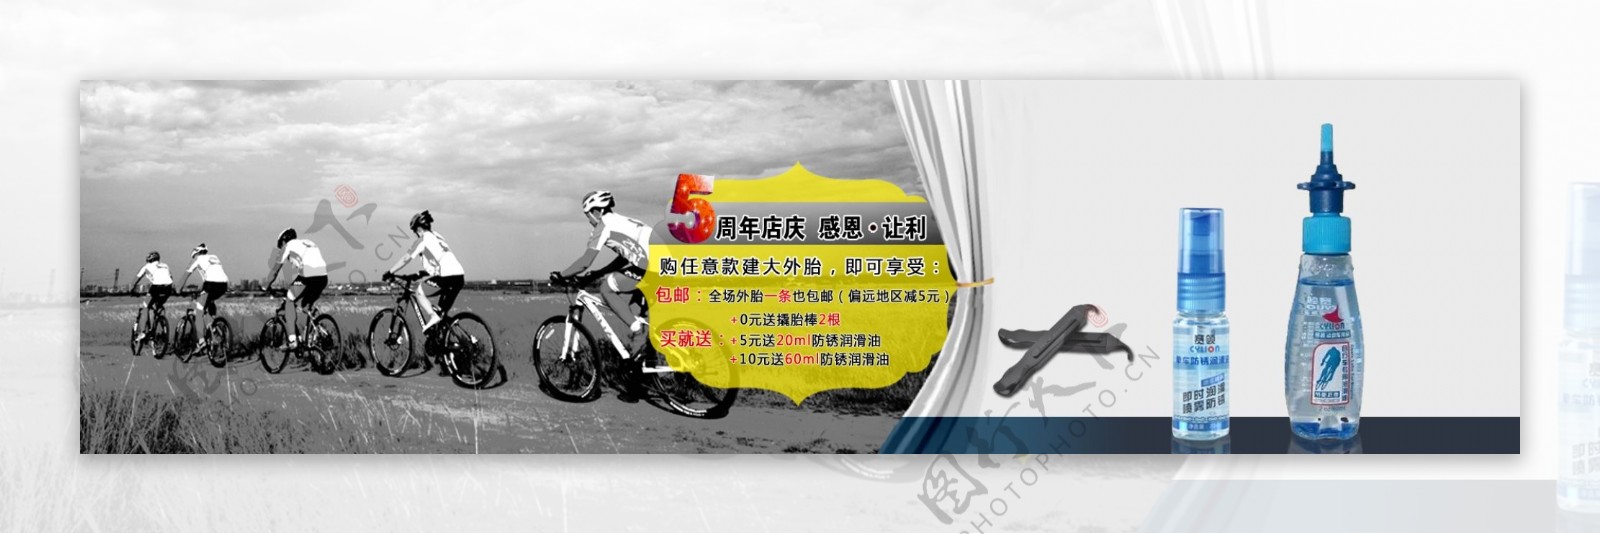 天猫周年庆海报设计户外运动单车促销海报